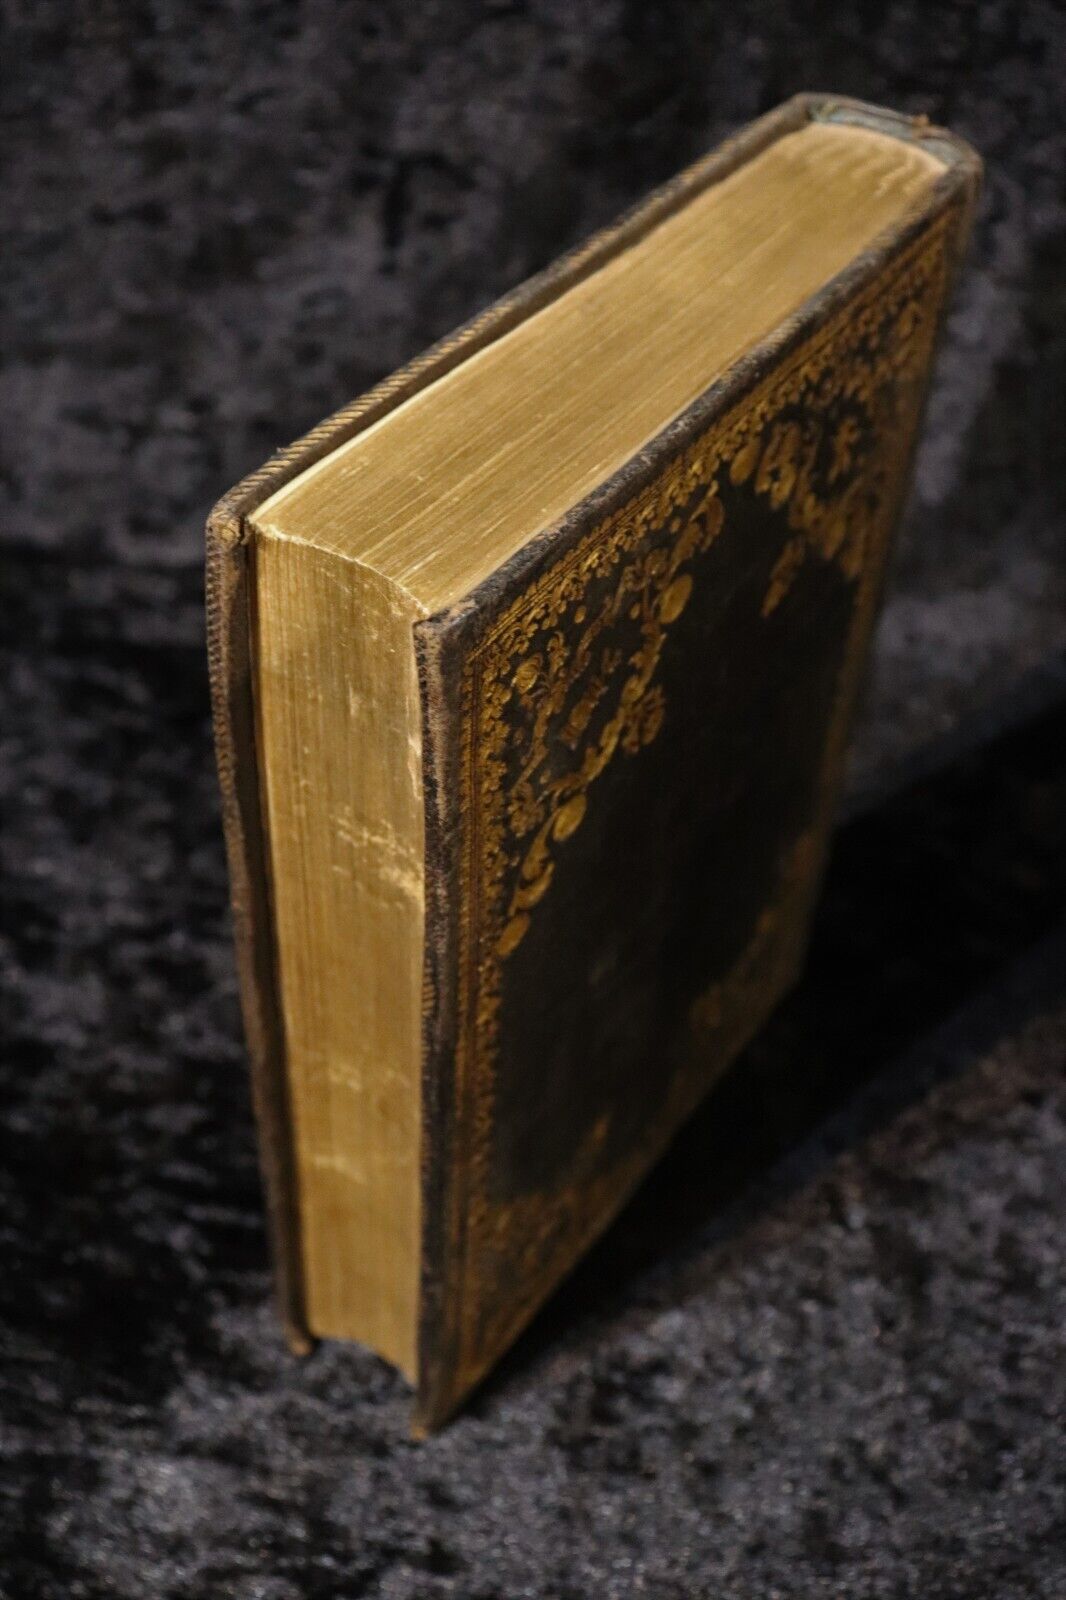 1731 Officium Hebdomadae Sanctae Juxta Forman Missalis Antiquarian Book - 0